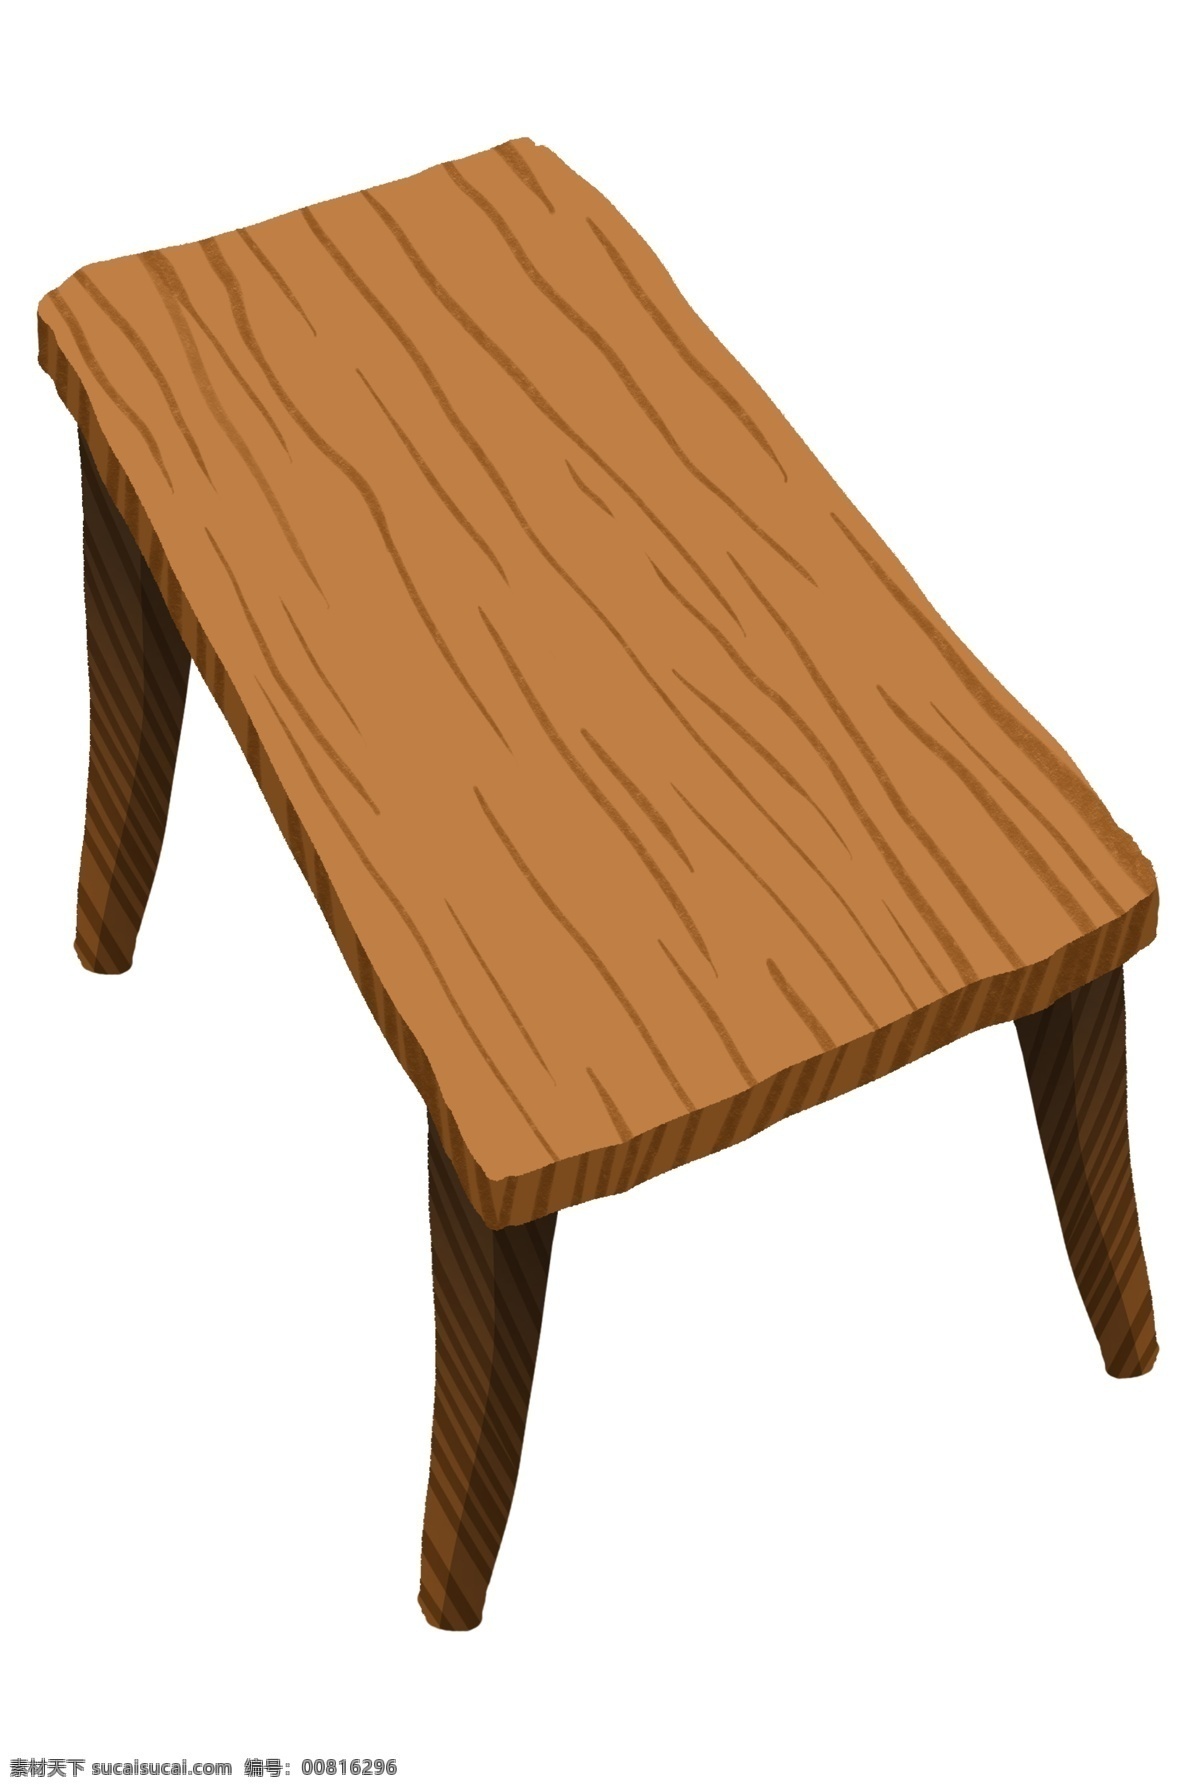 木质 小 凳子 卡通 插画 小凳子 卡通插画 木纹装饰 黄色木凳 座椅 简易家具 实用 木凳 无靠背